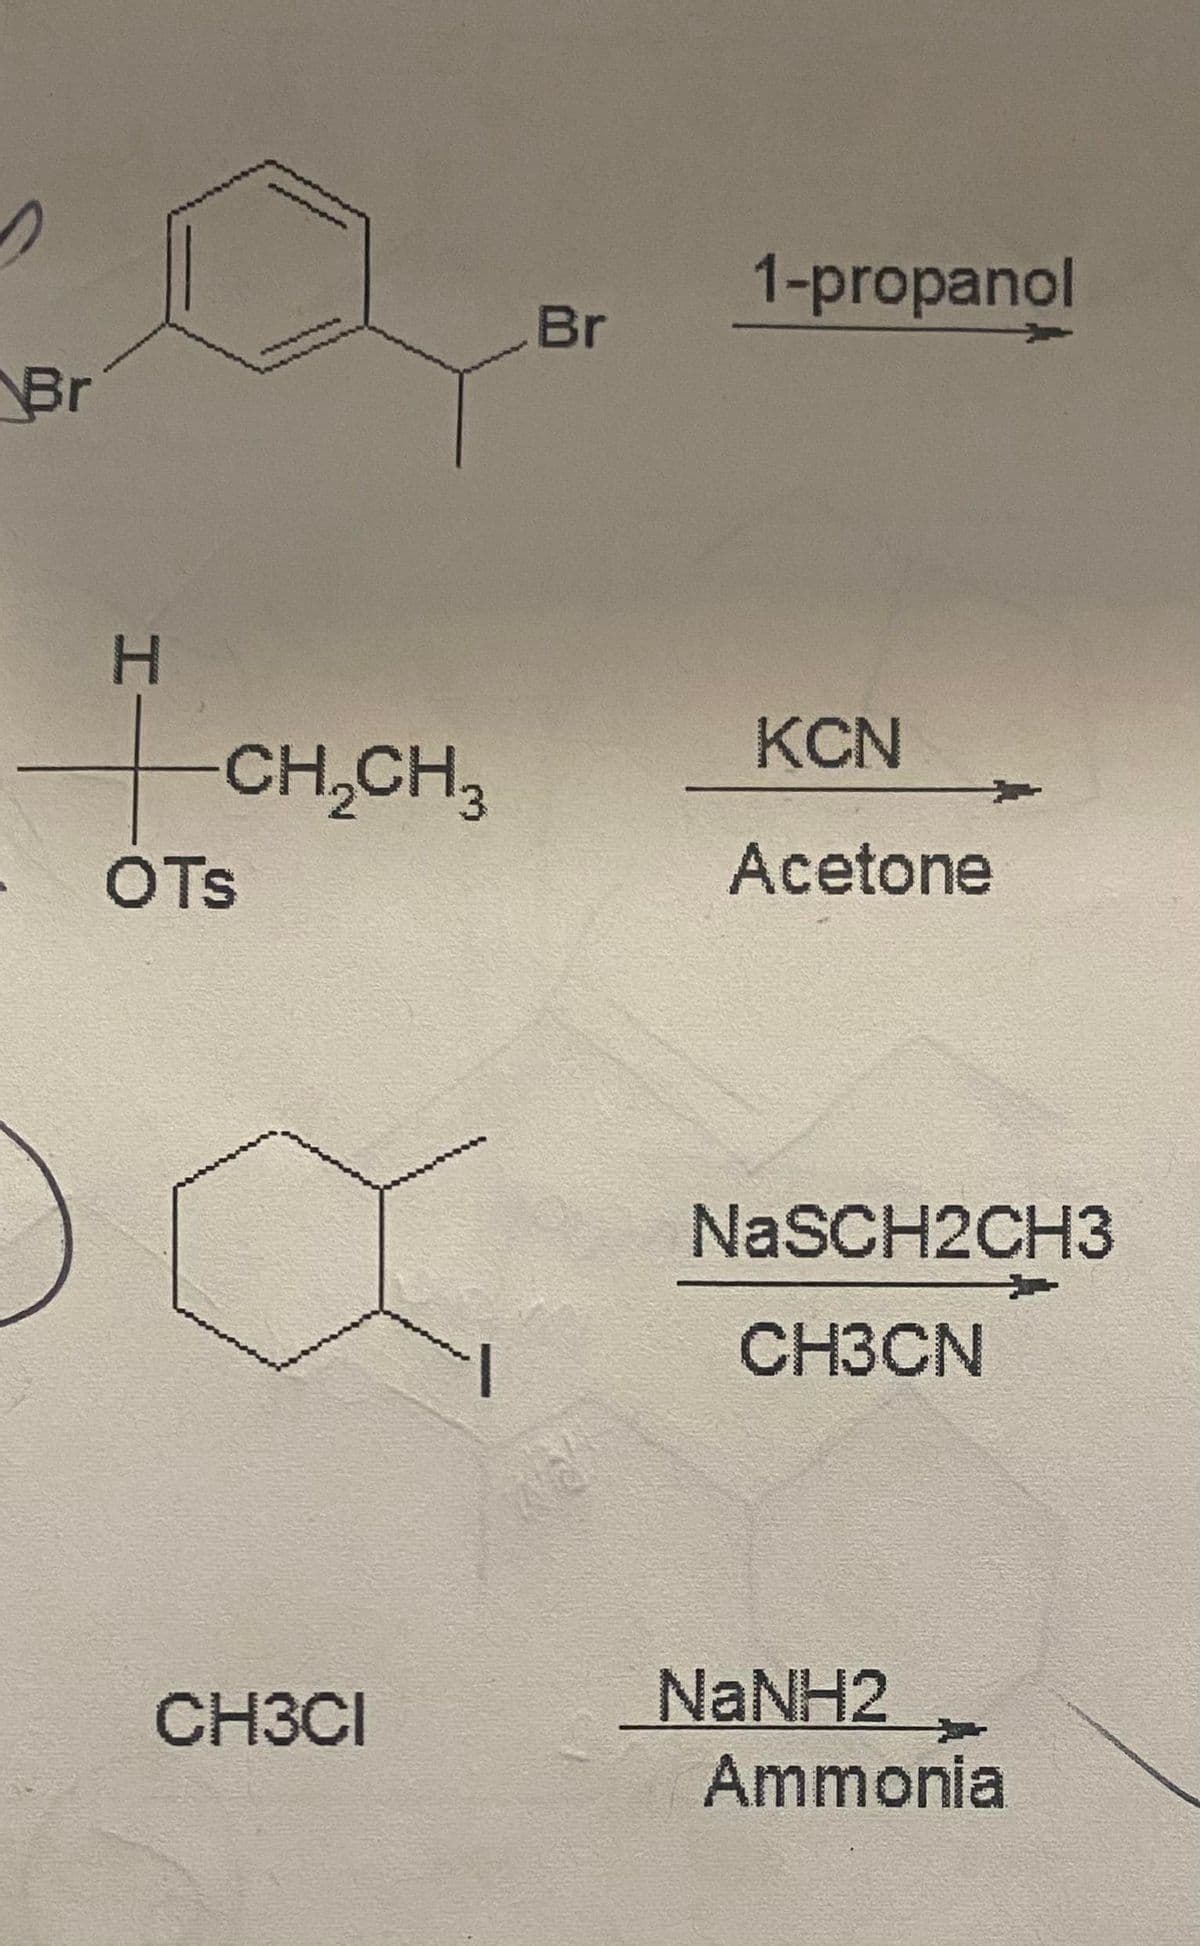 Br
H
+
OTS
CH₂CH3
CH3CI
Br
1-propanol
KCN
Acetone
NaSCH2CH3
CH3CN
NaNH2
Ammonia